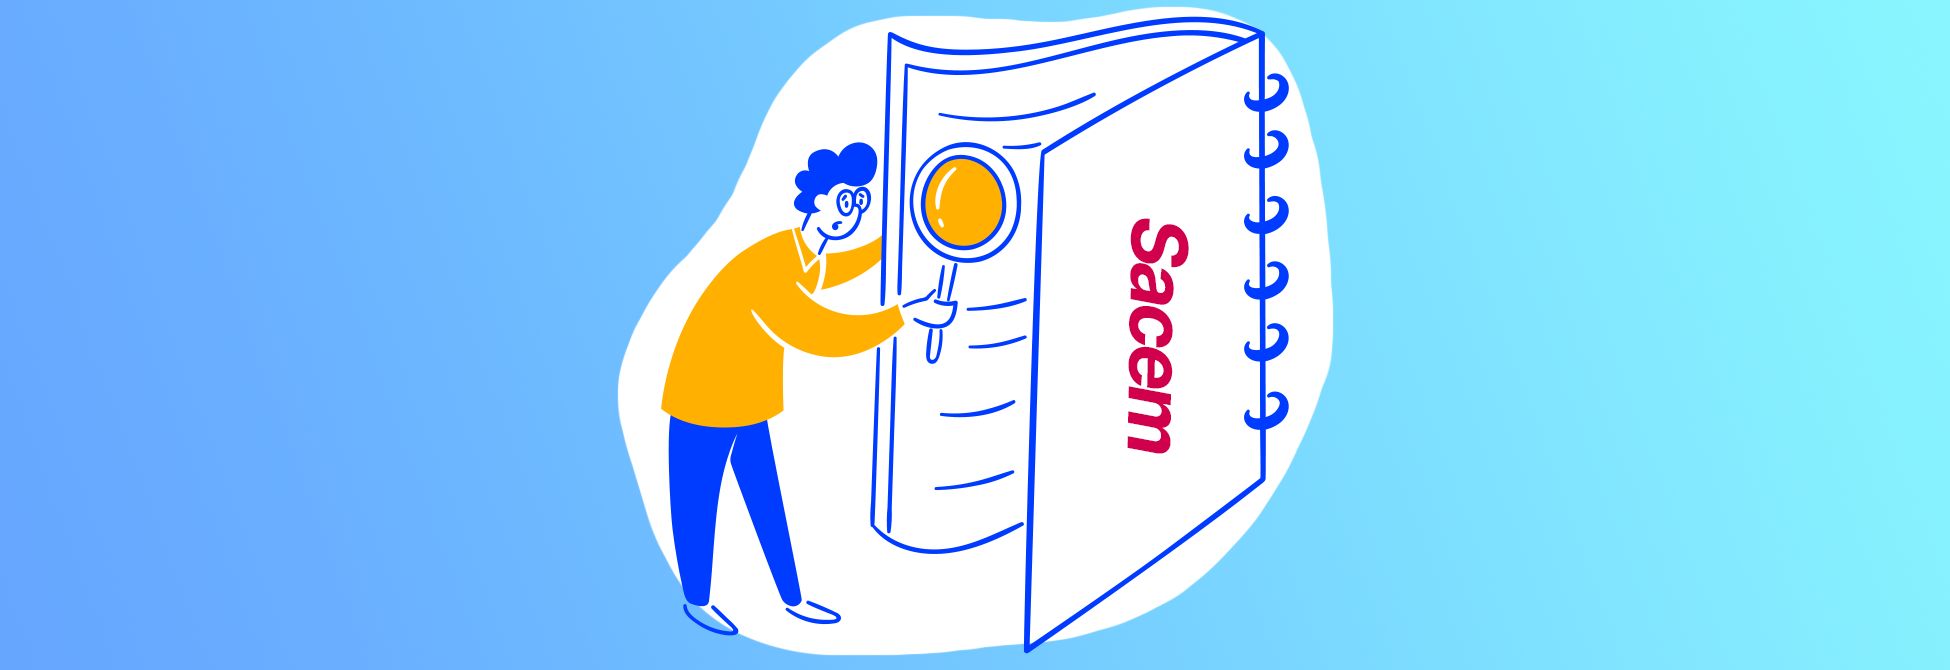 Utiliser les données de la SACEM pour améliorer votre stratégie de promotion | RightsNow!